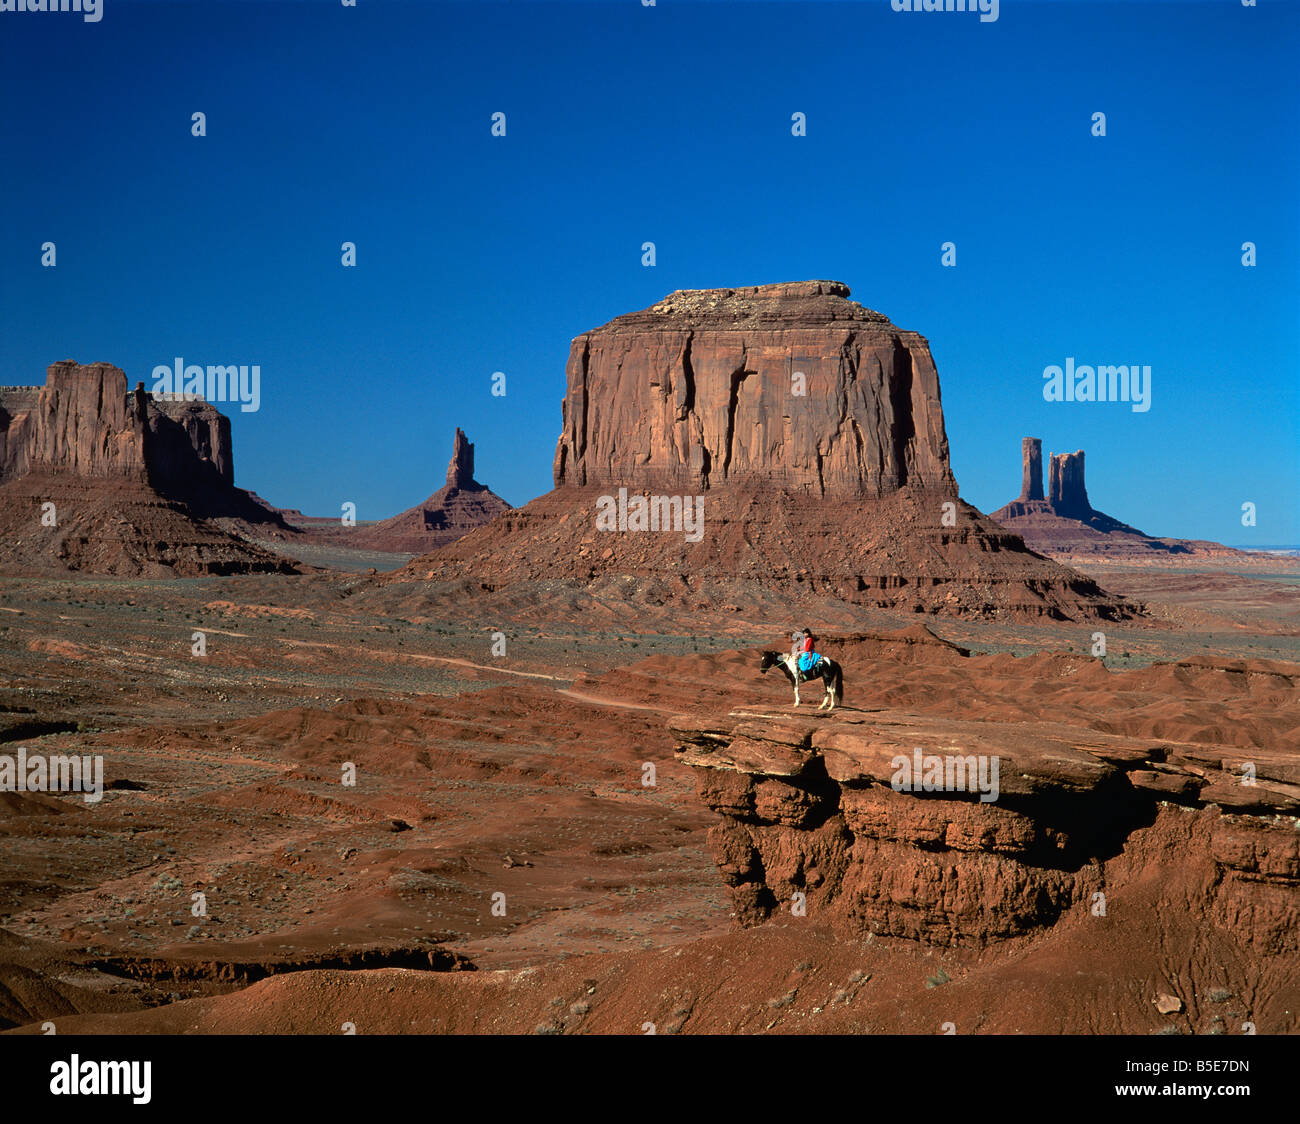 Una donna a cavallo nel deserto con formazioni rocciose causate da fenomeni di erosione in background in Monument Valley Arizona USA UN Foto Stock